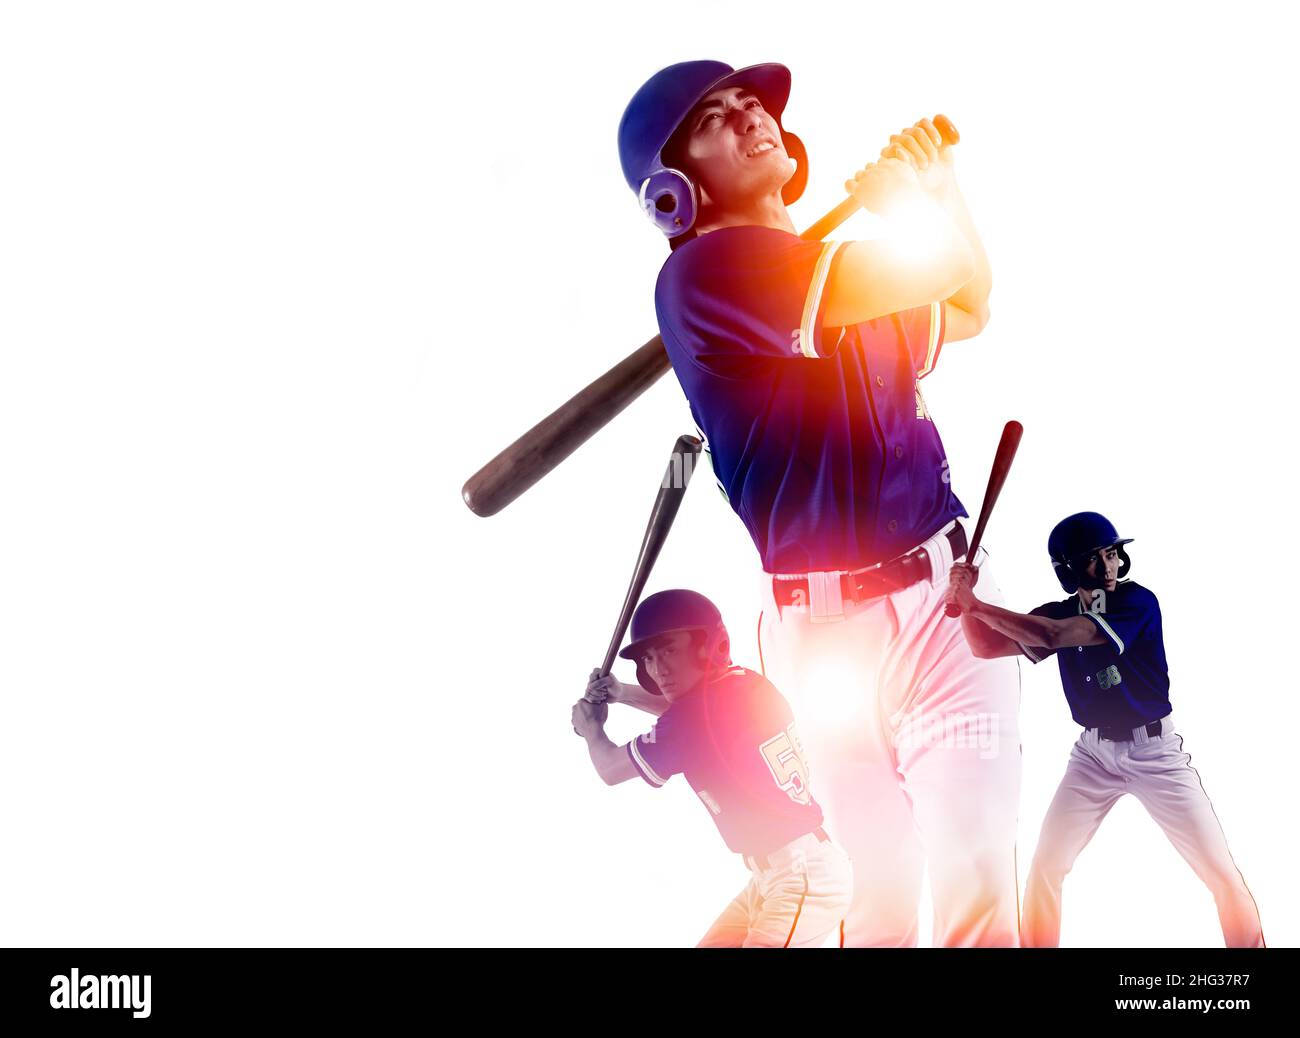 Joueur de baseball hitter dans l'action et les concepts Banque D'Images